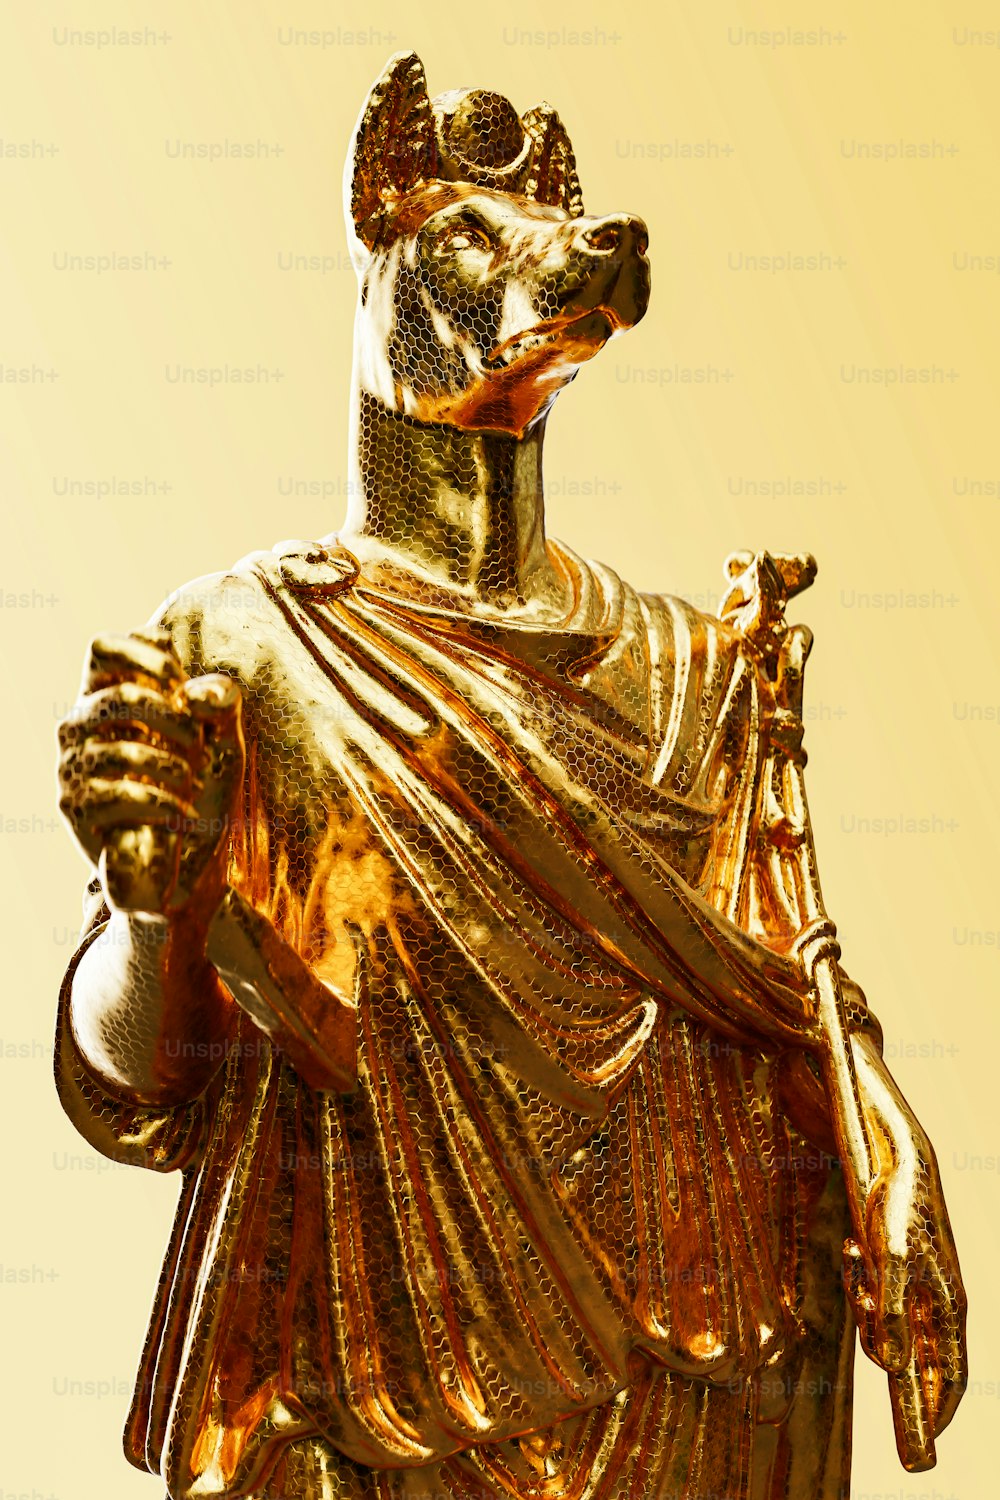 une statue dorée d’un homme avec une couronne sur la tête